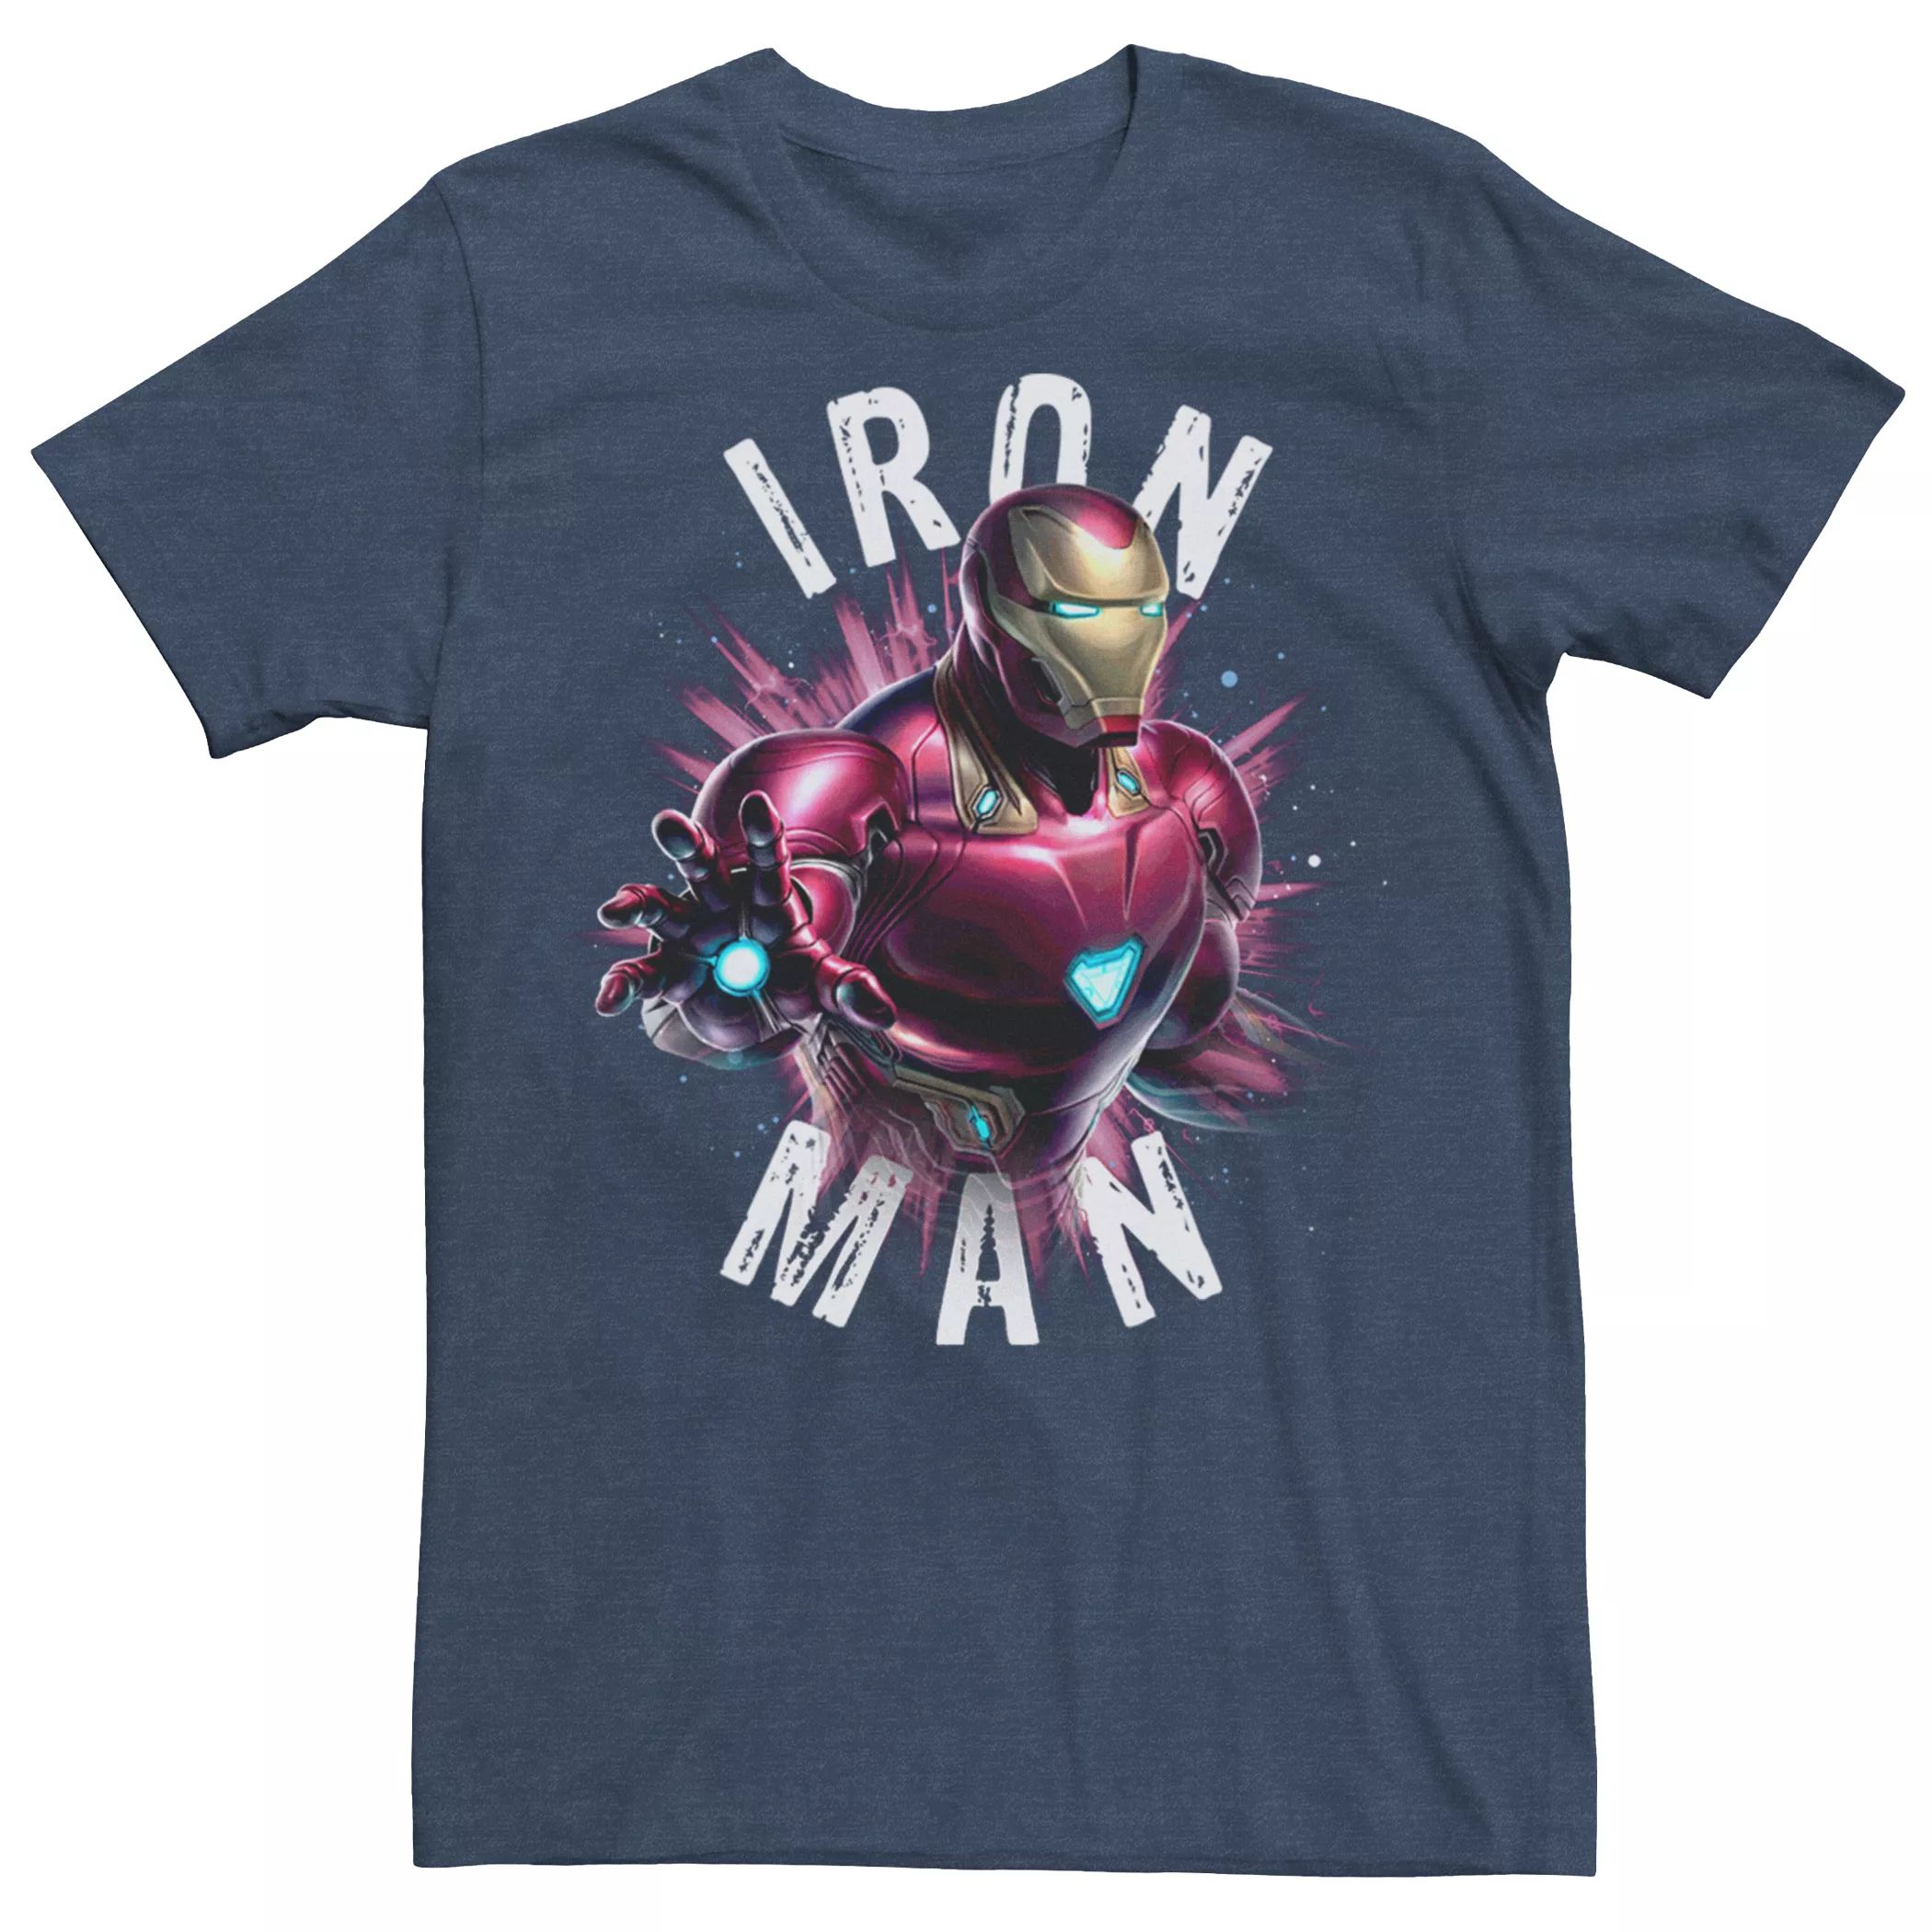 Мужская футболка с портретом Marvel Avengers Endgame Iron Man Power Licensed Character мужская футболка marvel iron man arc reactor heart с портретом licensed character